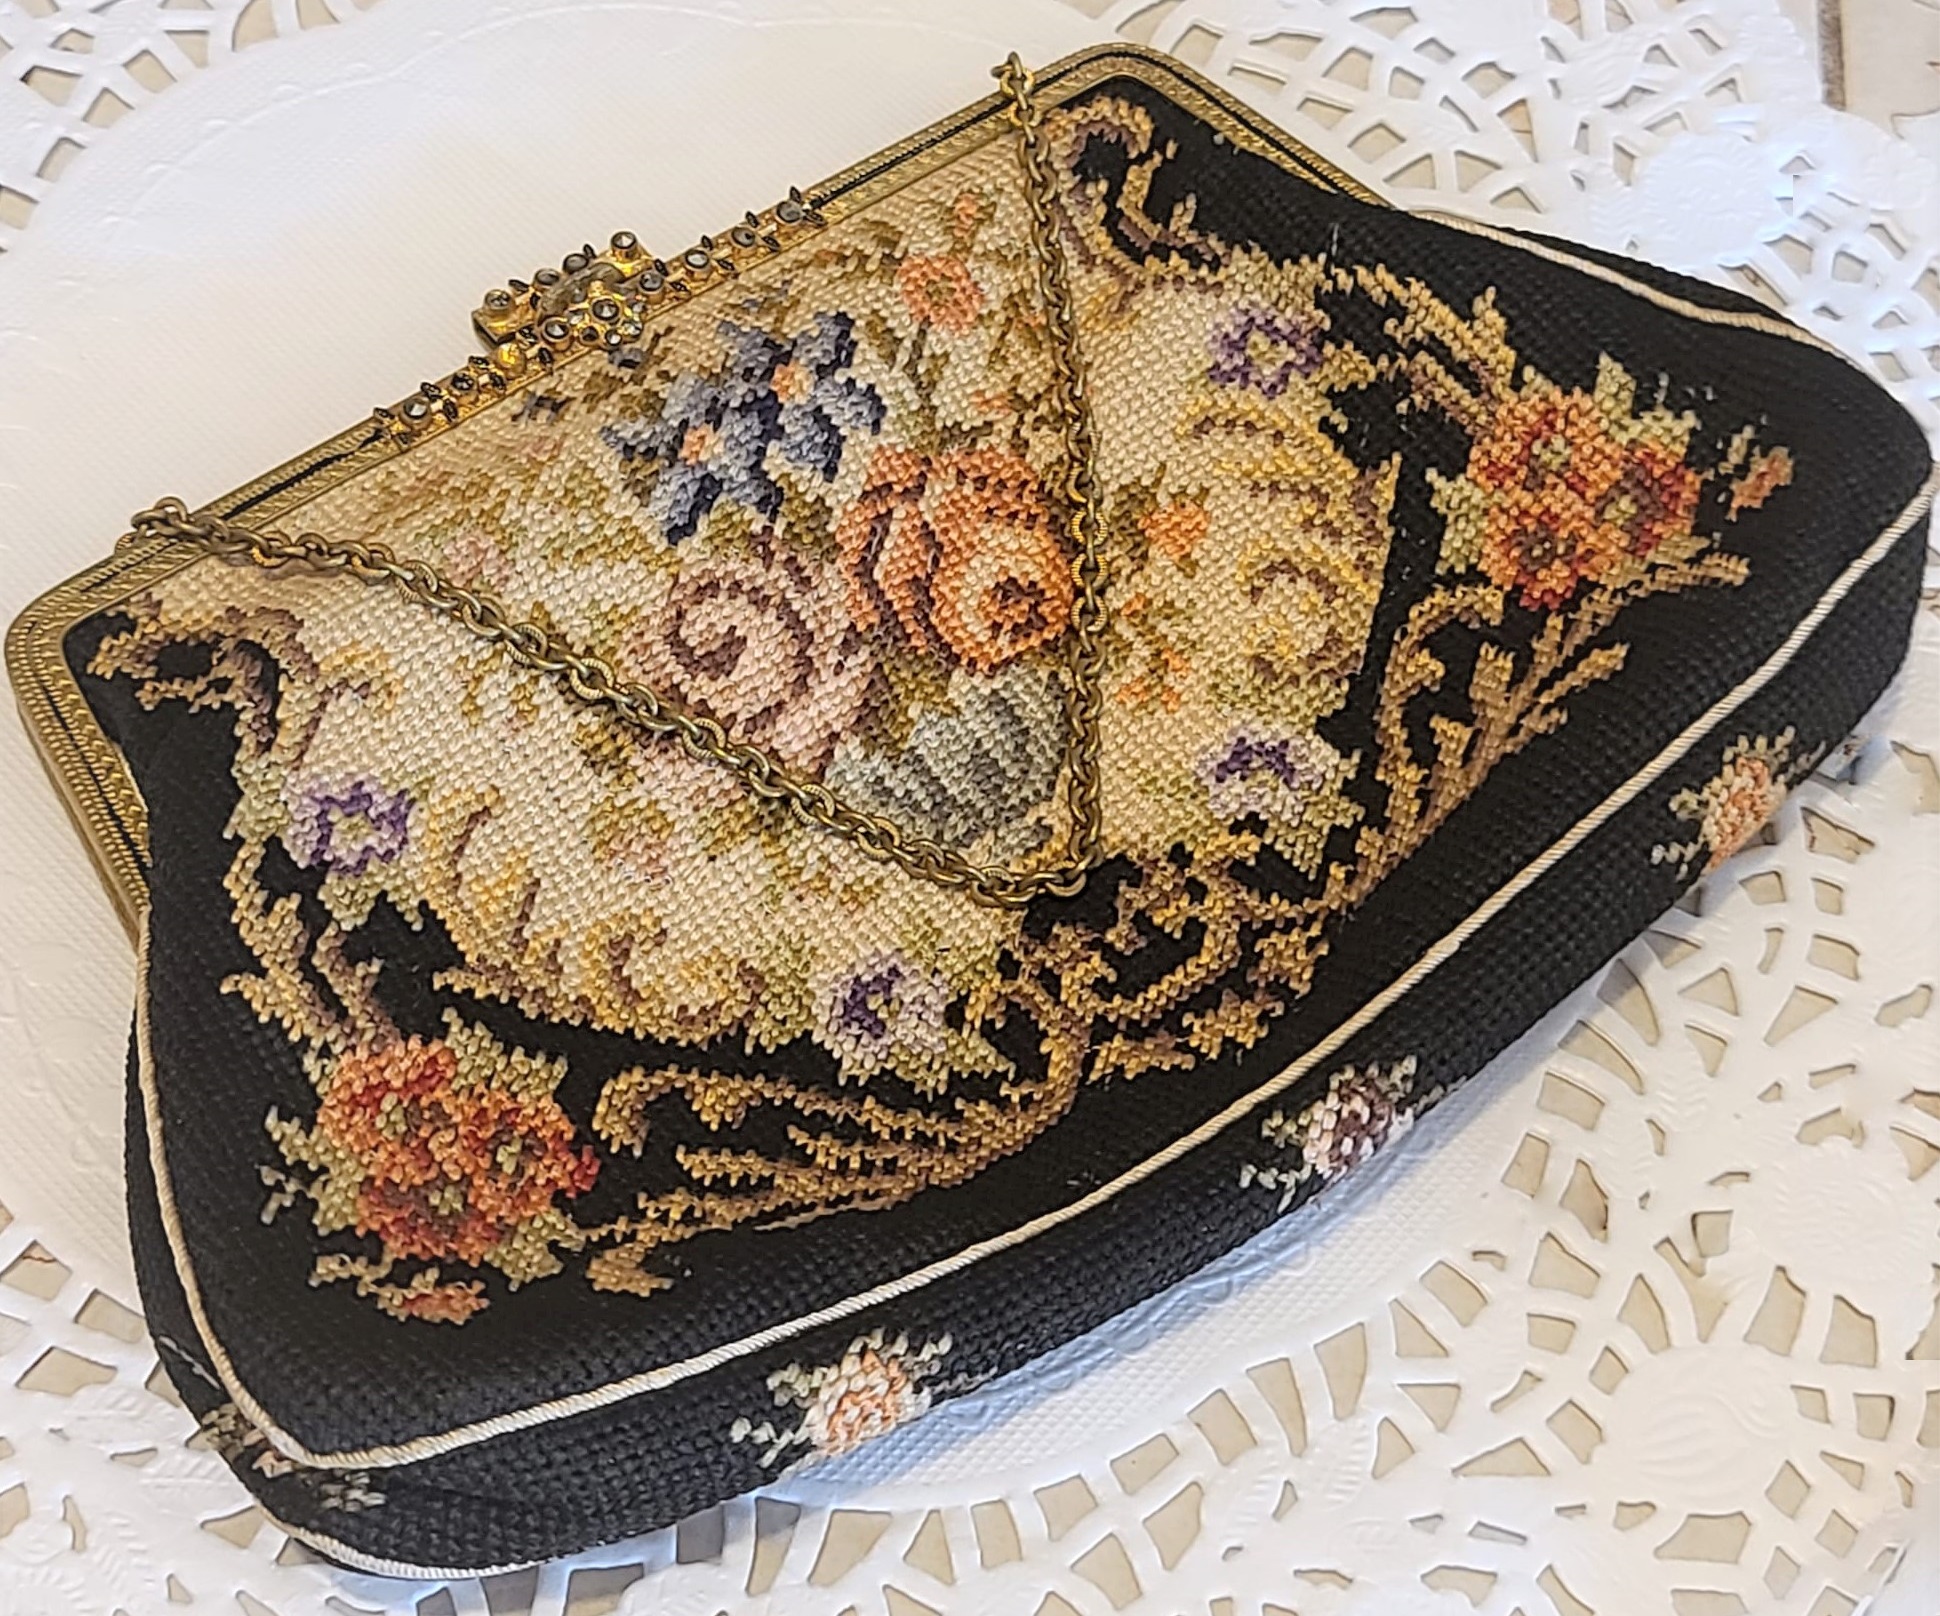 Needlepoint vintage purse